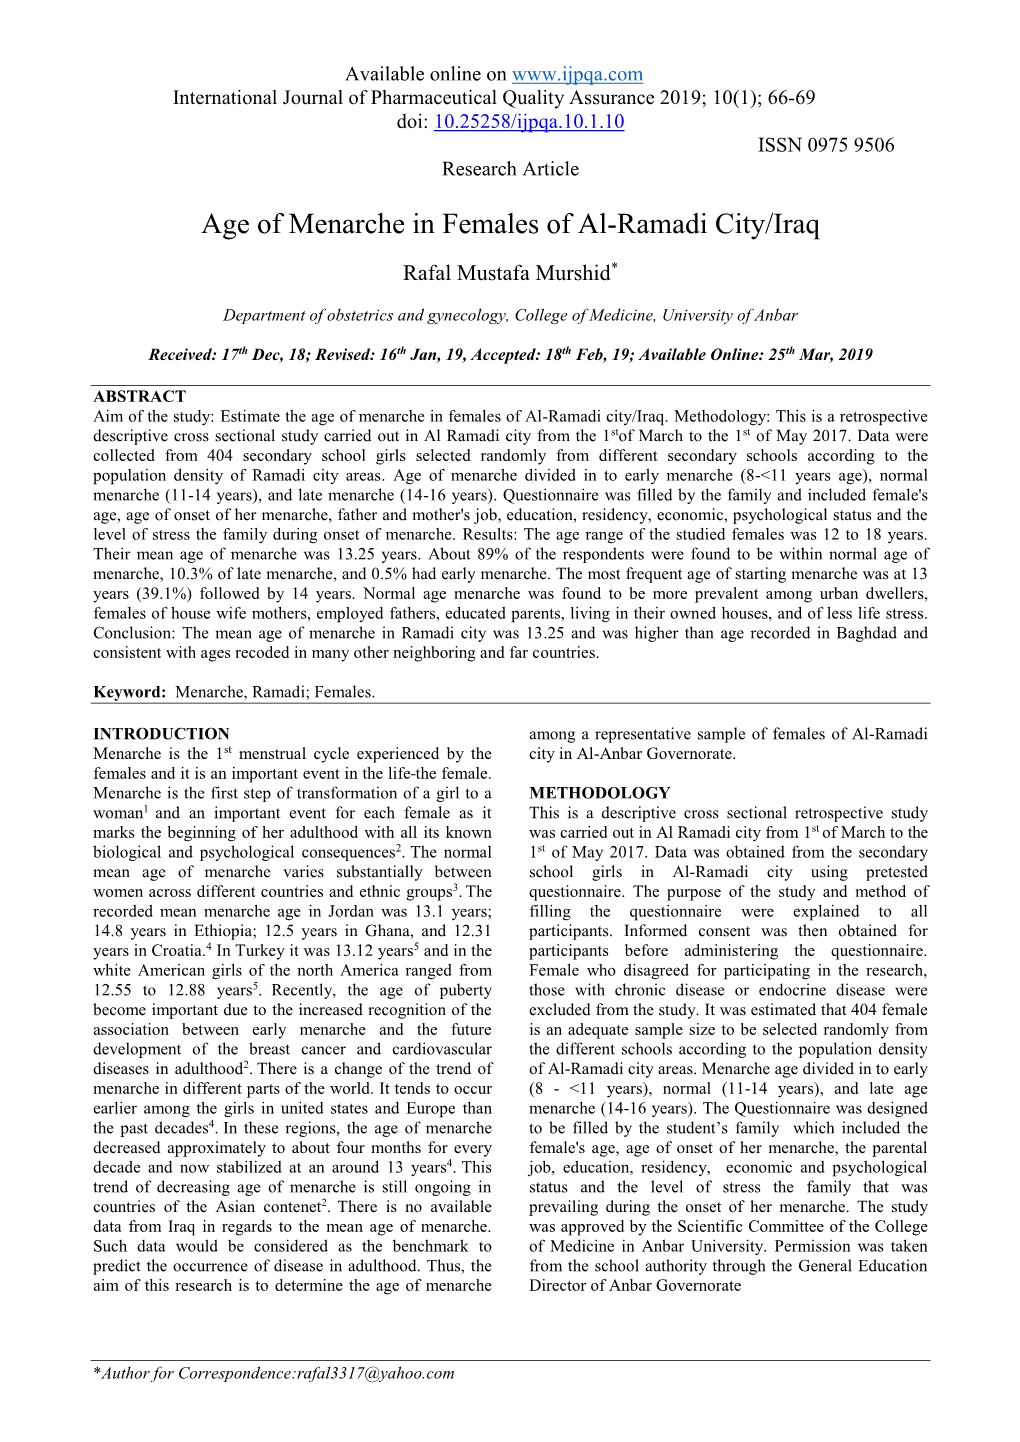 Age of Menarche in Females of Al-Ramadi City/Iraq